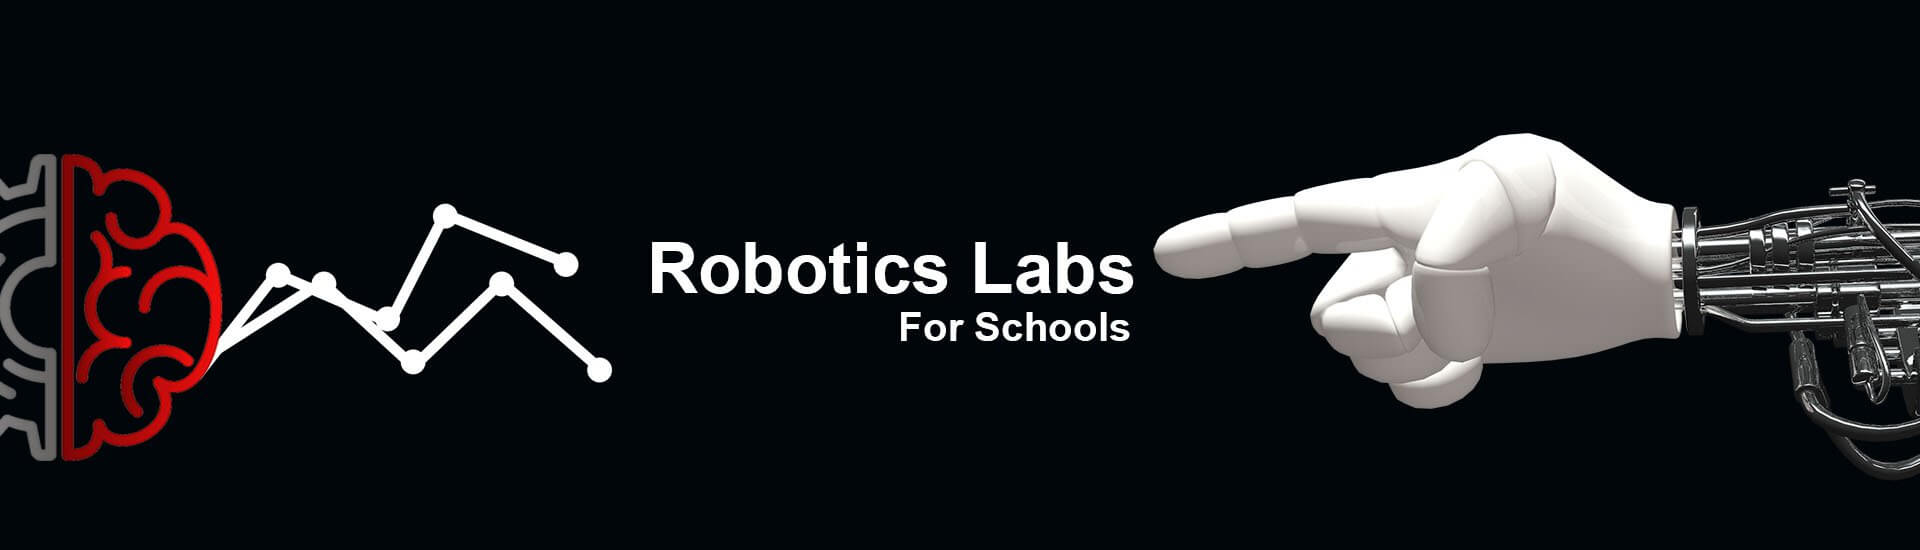 robotics labs for schools